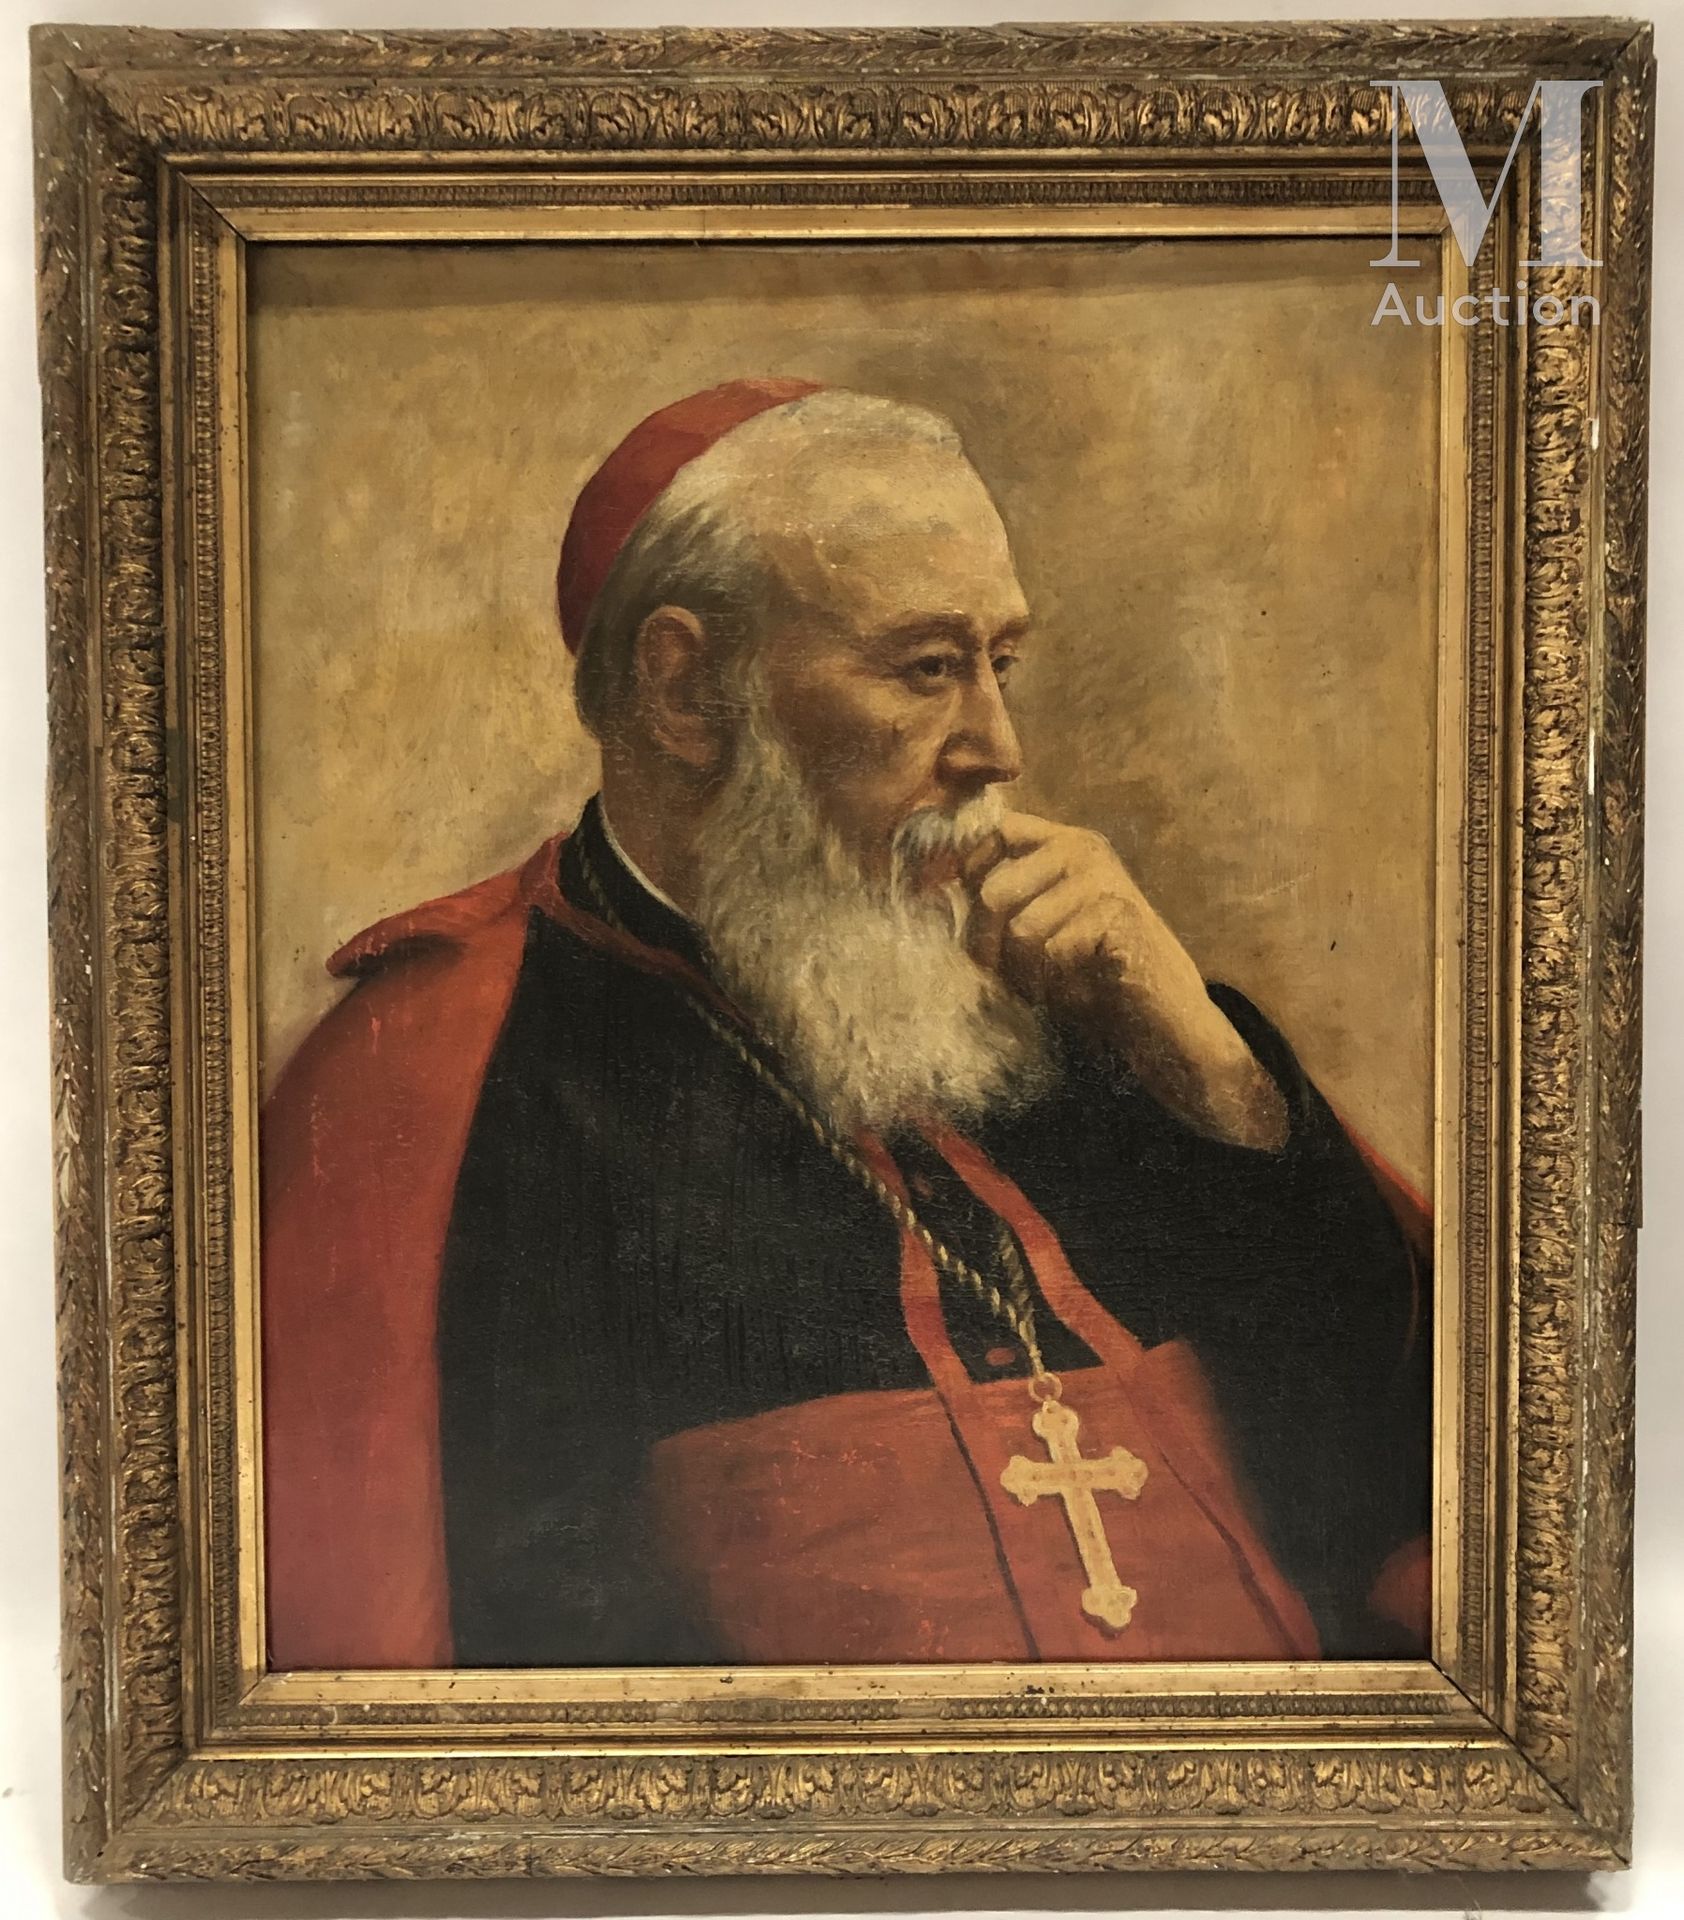 Ecole française de la fin du XIXème, début du XXème siècle 
Portrait du Cardinal&hellip;